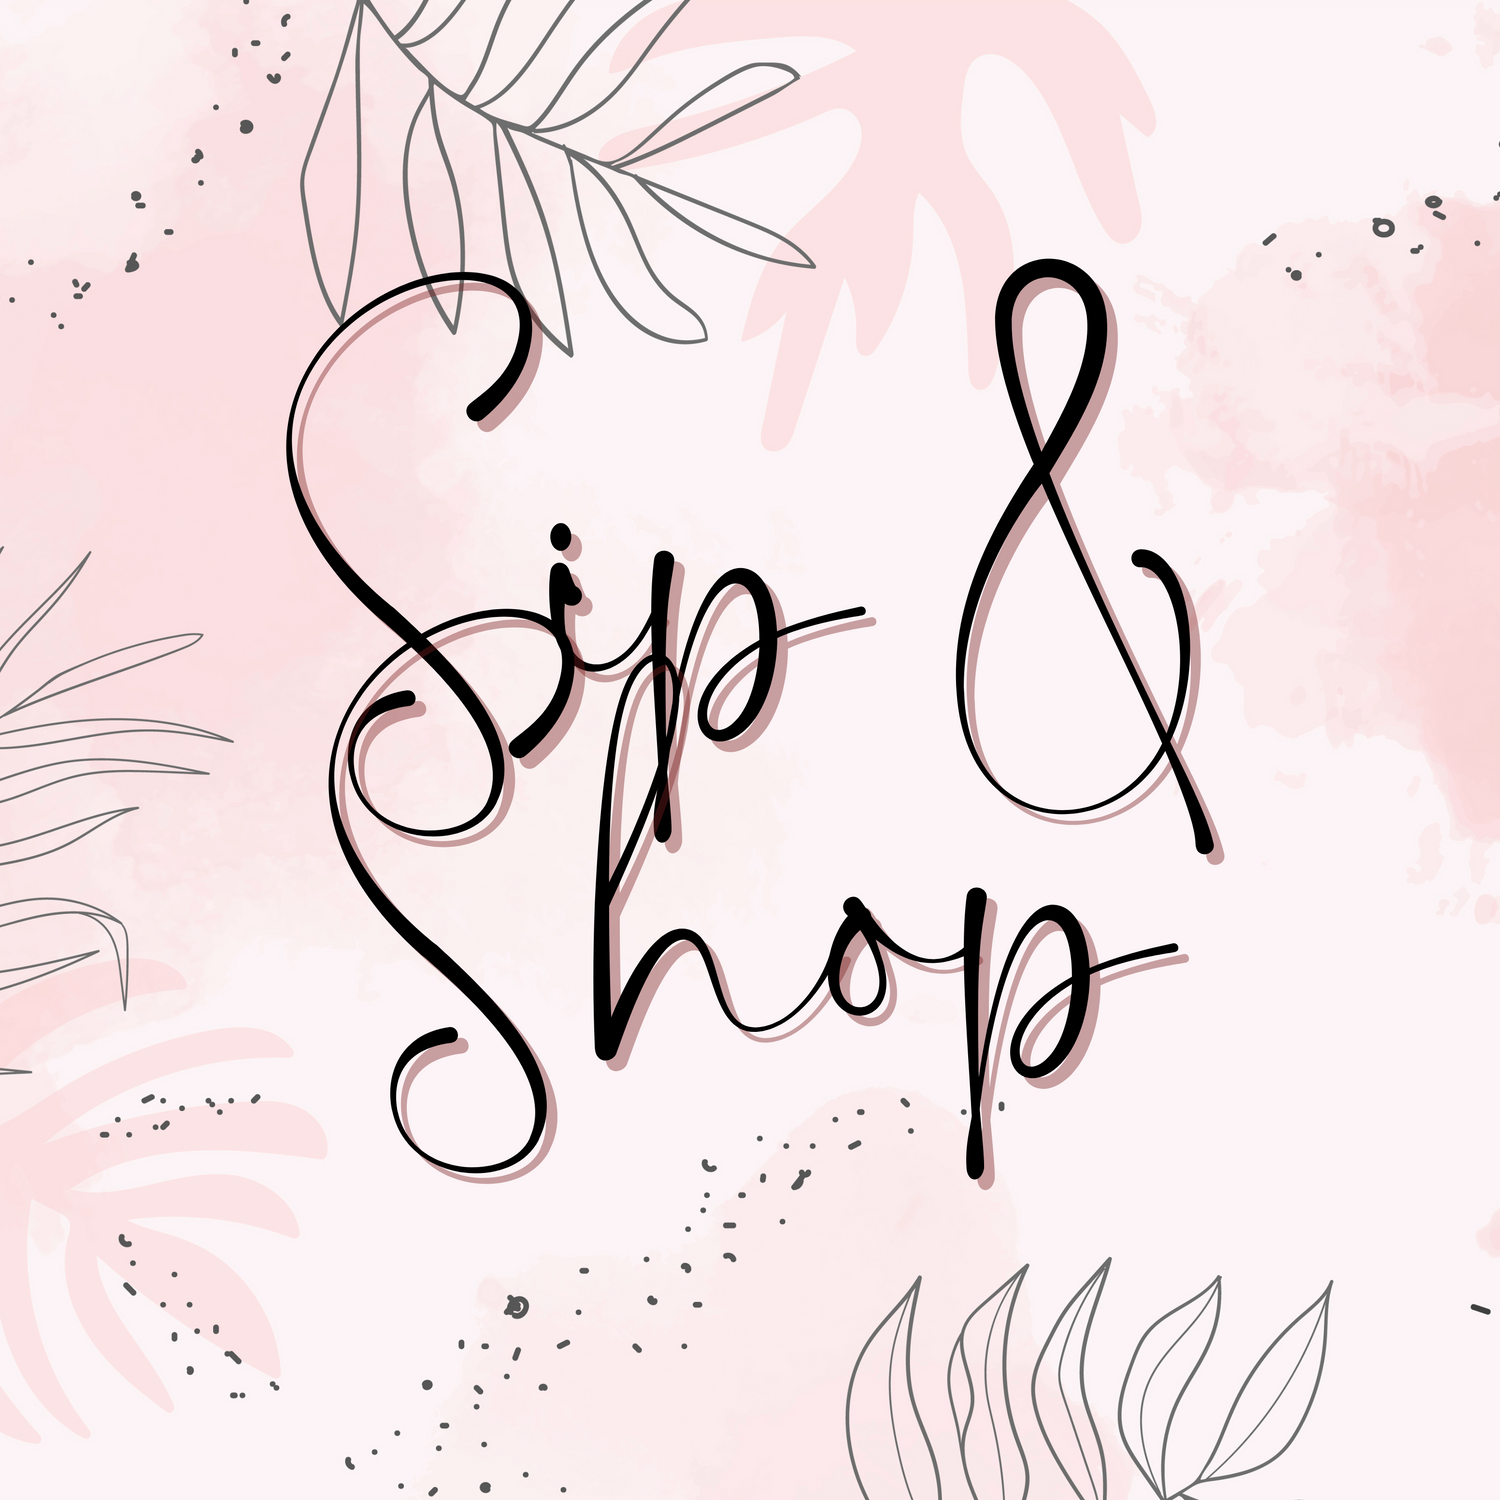 Sip & Shop